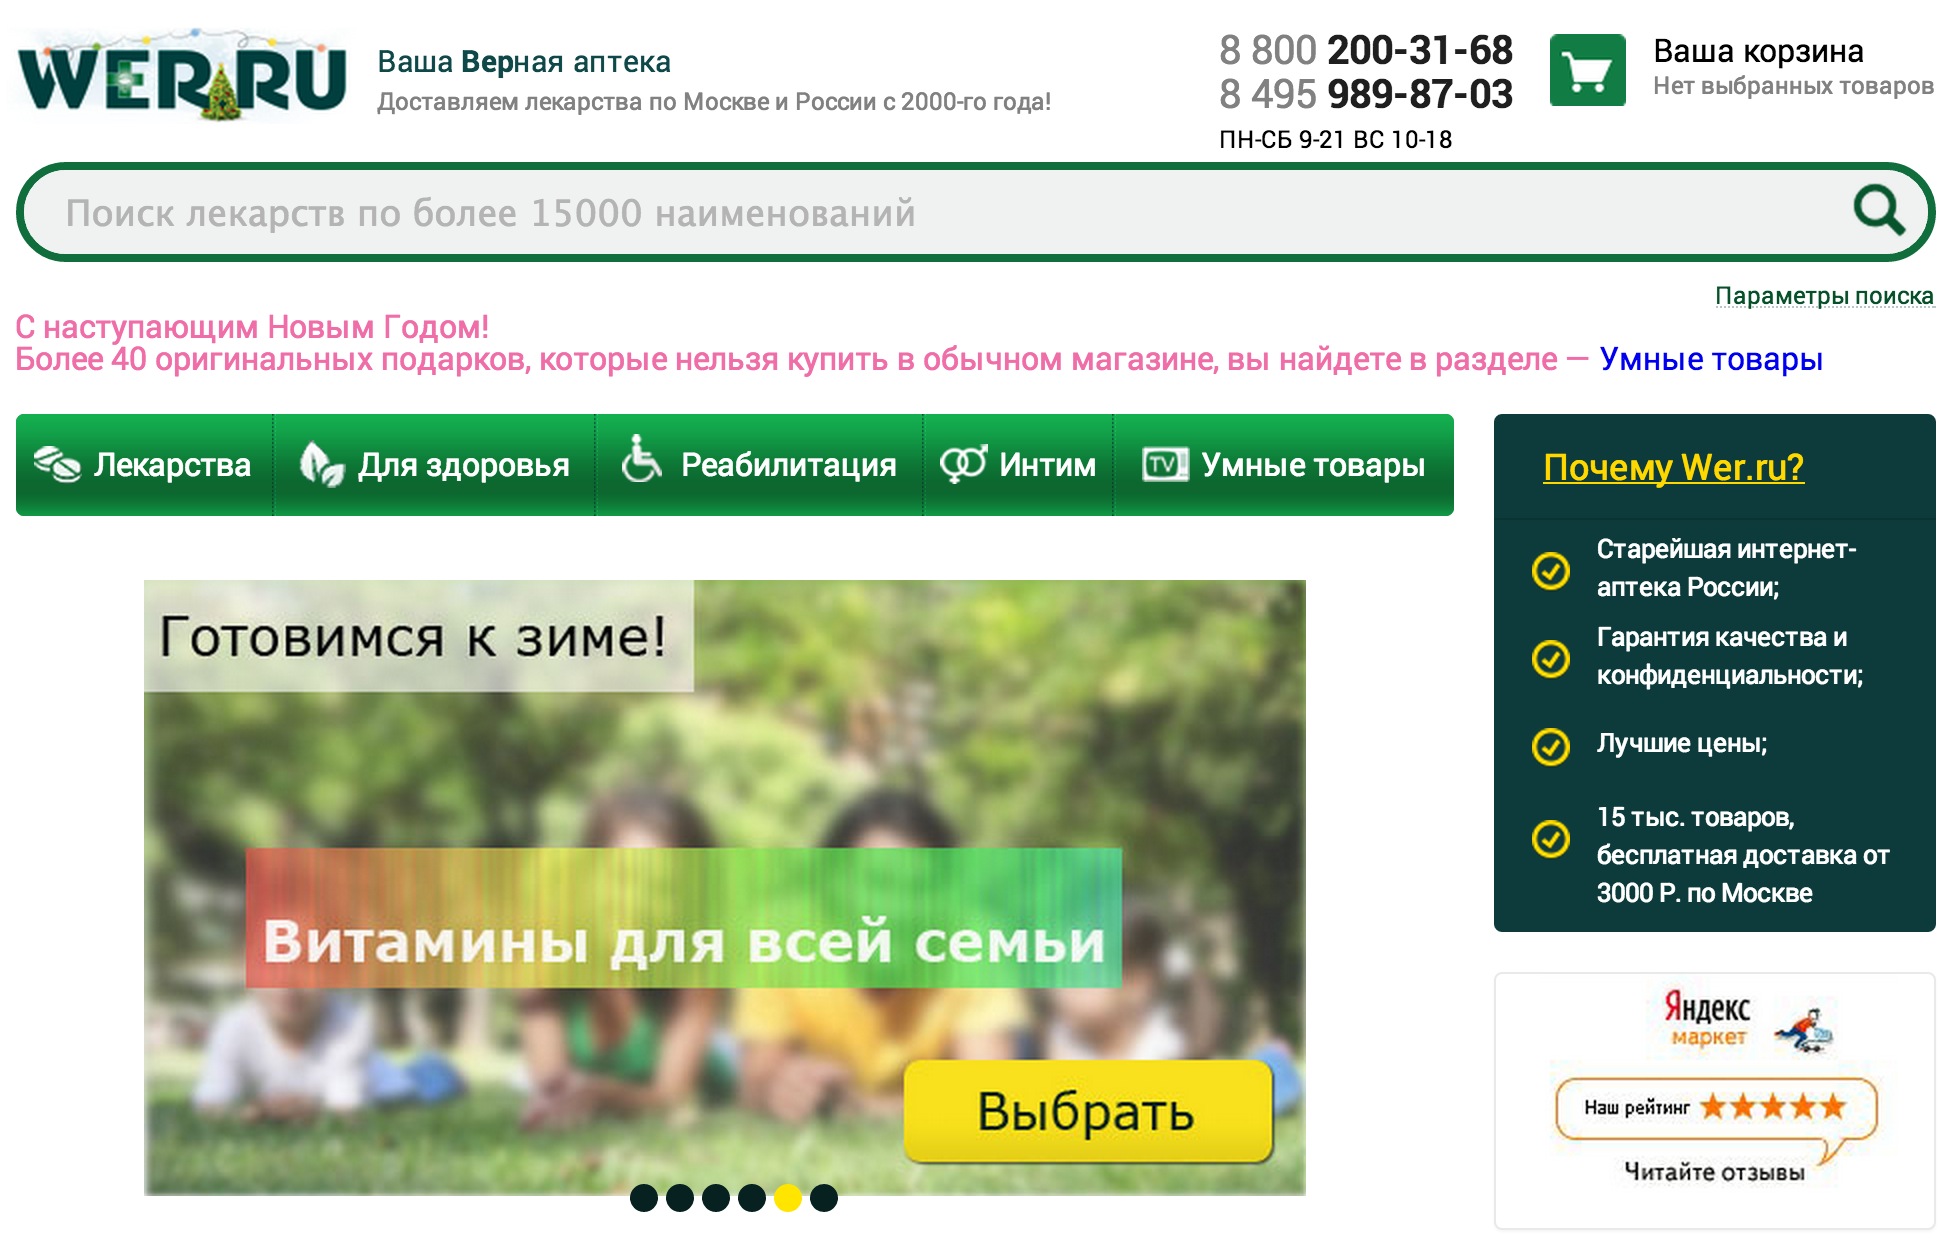 Интернет-аптека Wer.ru